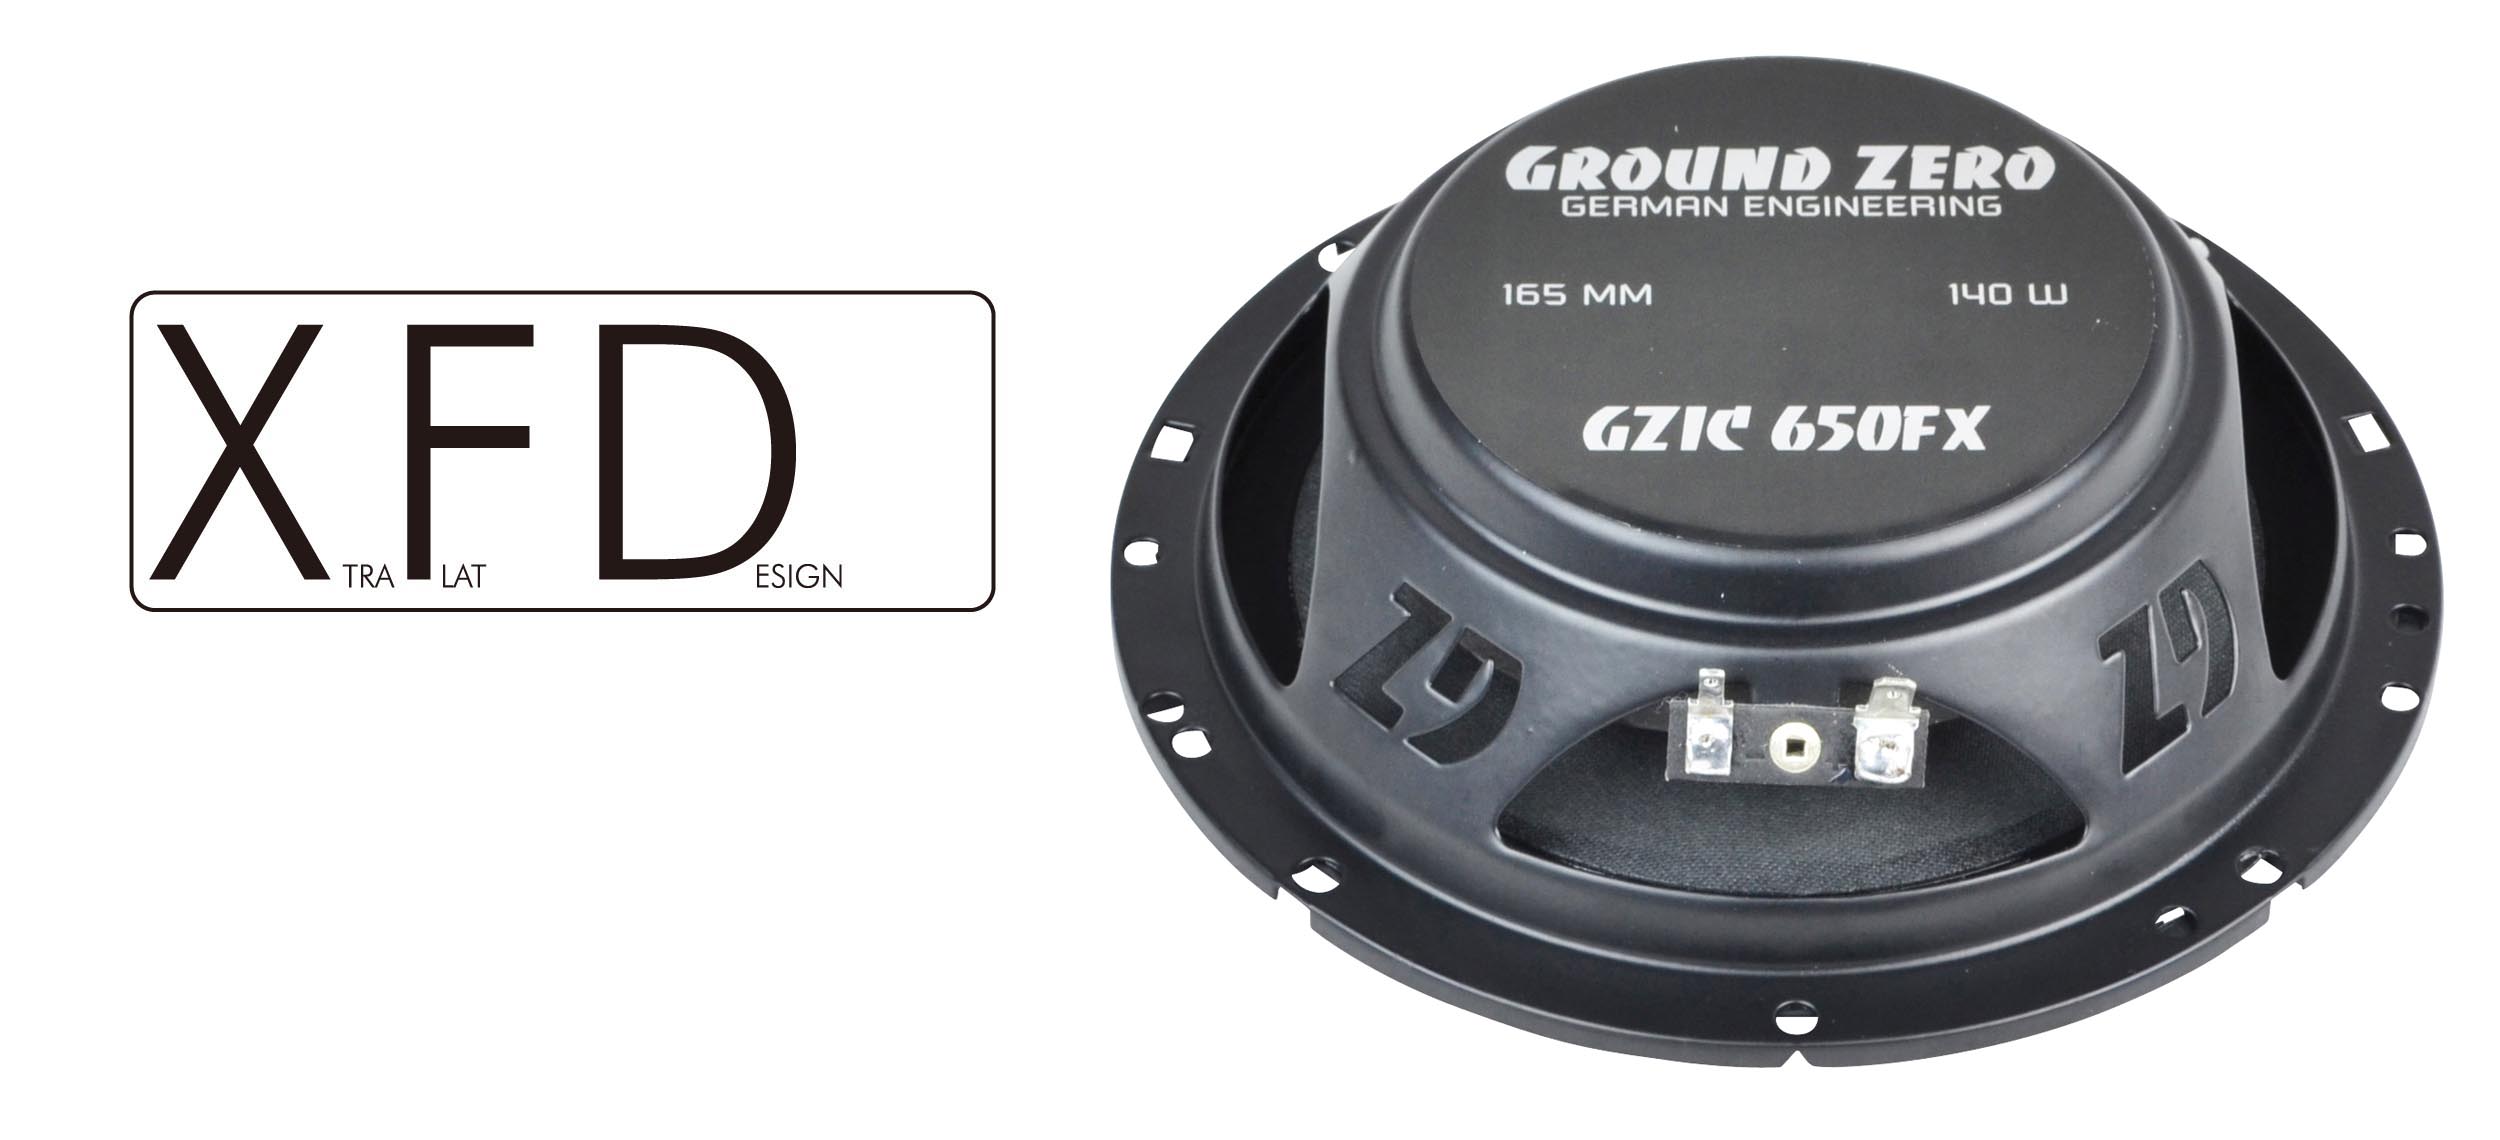 GZ-GZIC 650FX – E:S CORPORATION